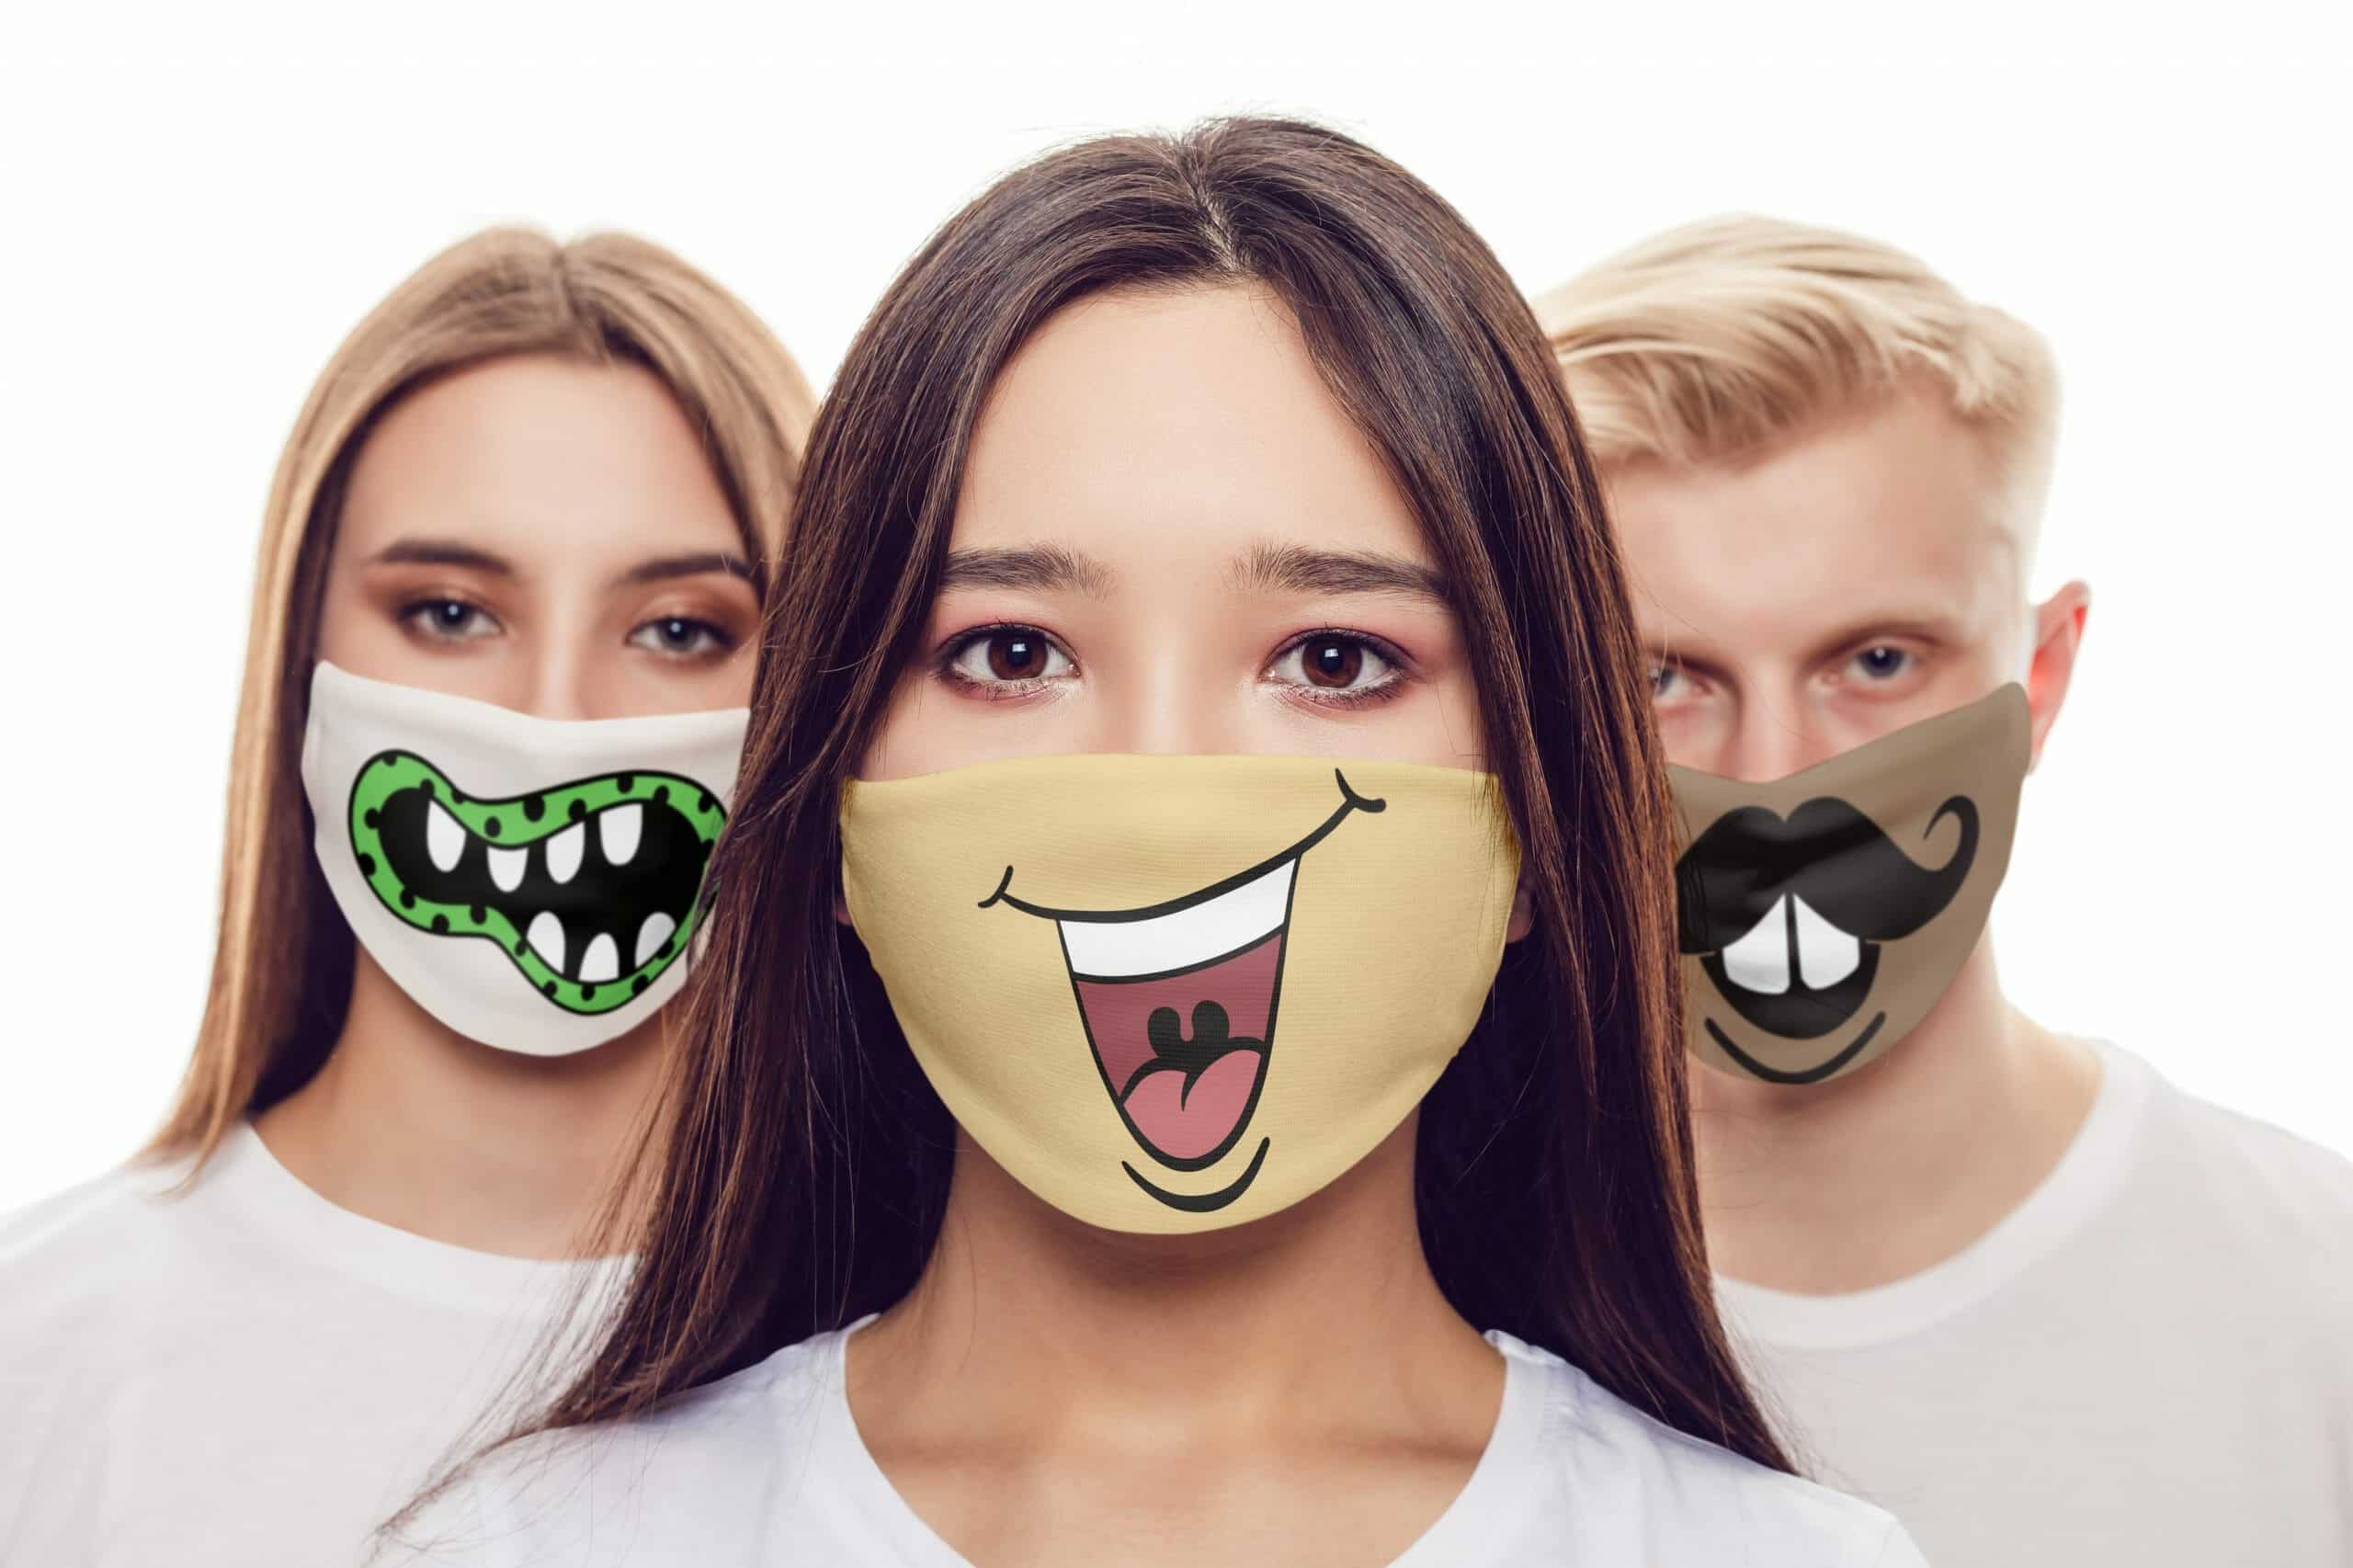 Download Hilarious Cricut Face Mask SVG Designs (Cut File Bundle ...